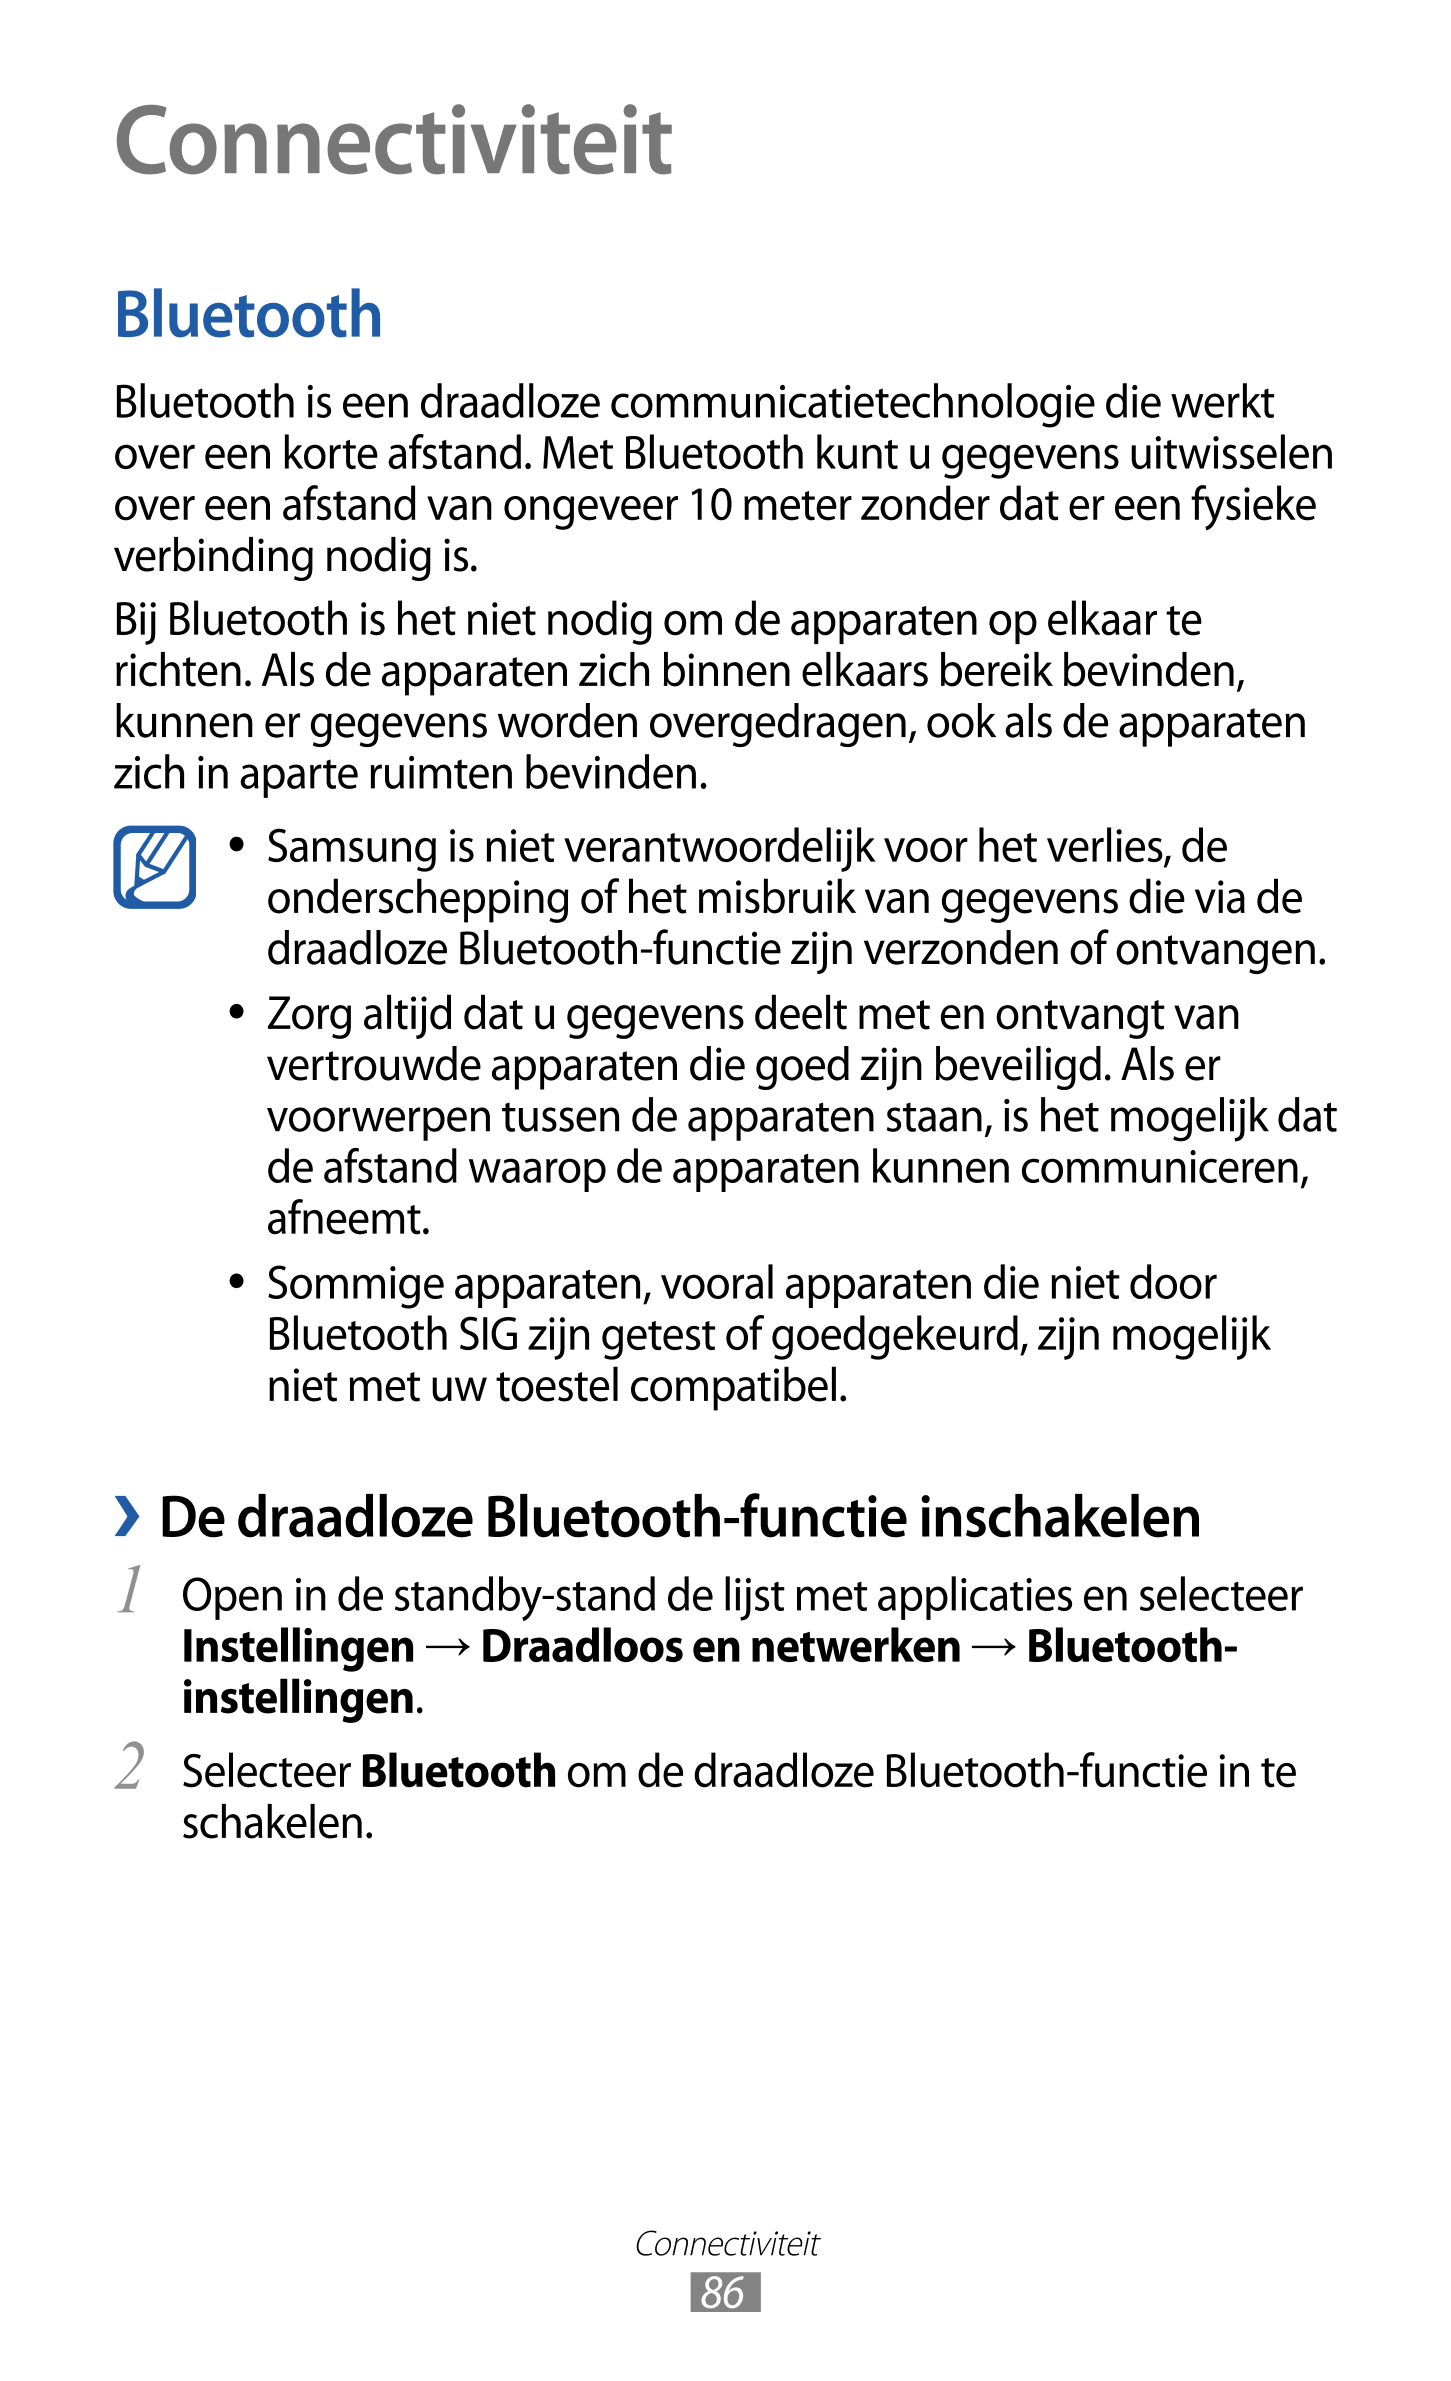 Connectiviteit
Bluetooth
Bluetooth is een draadloze communicatietechnologie die werkt 
over een korte afstand. Met Bluetooth kun